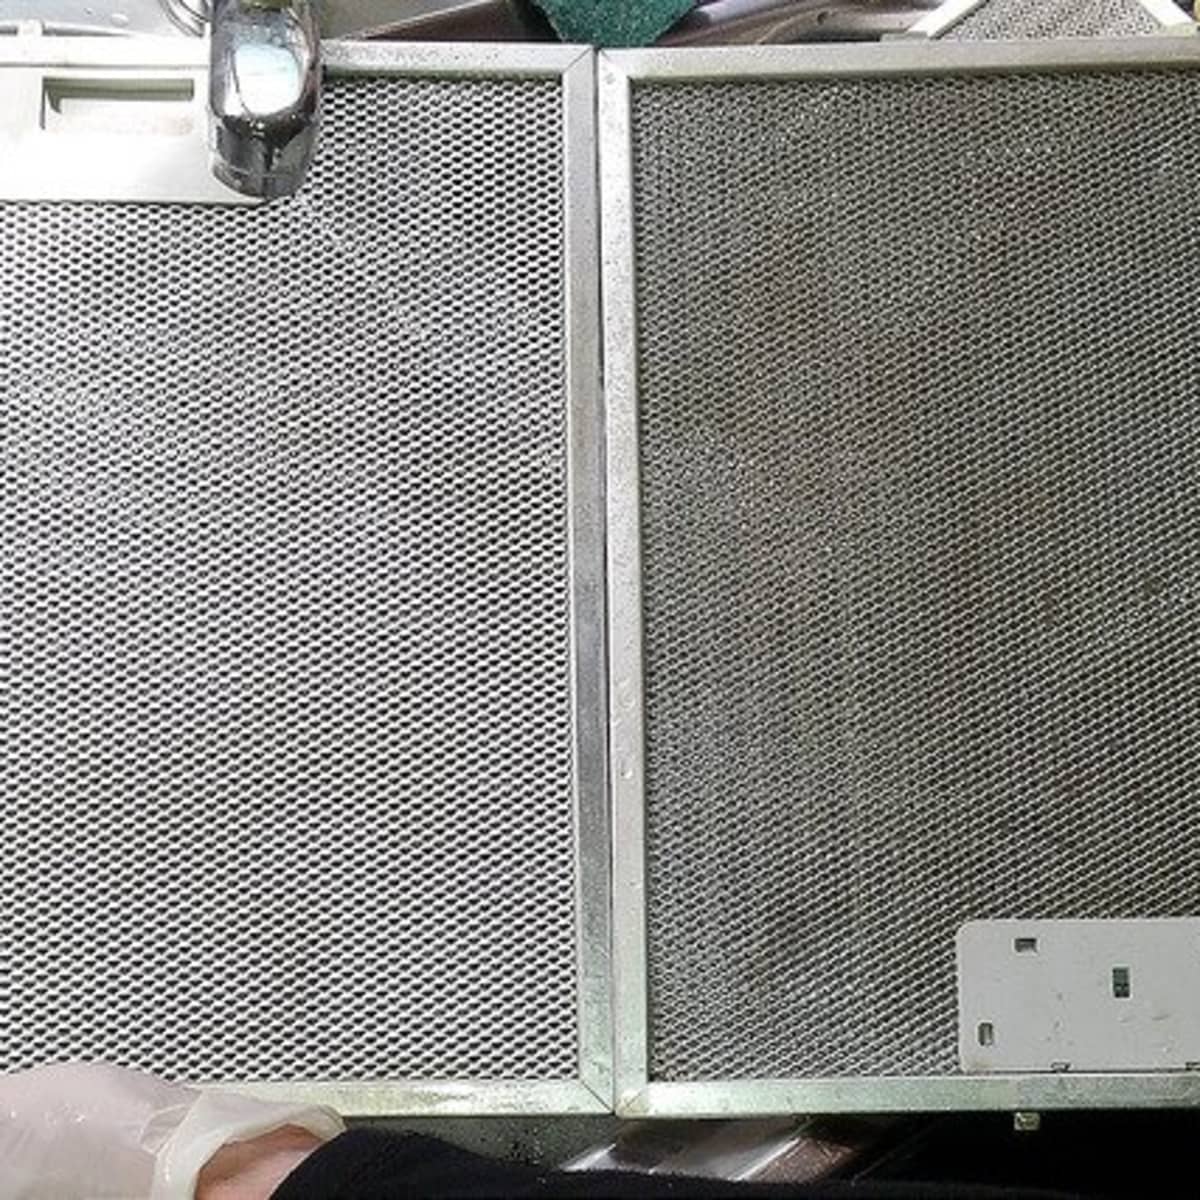 Baffle vs. Mesh vs. Charcoal Filters for Range Hoods